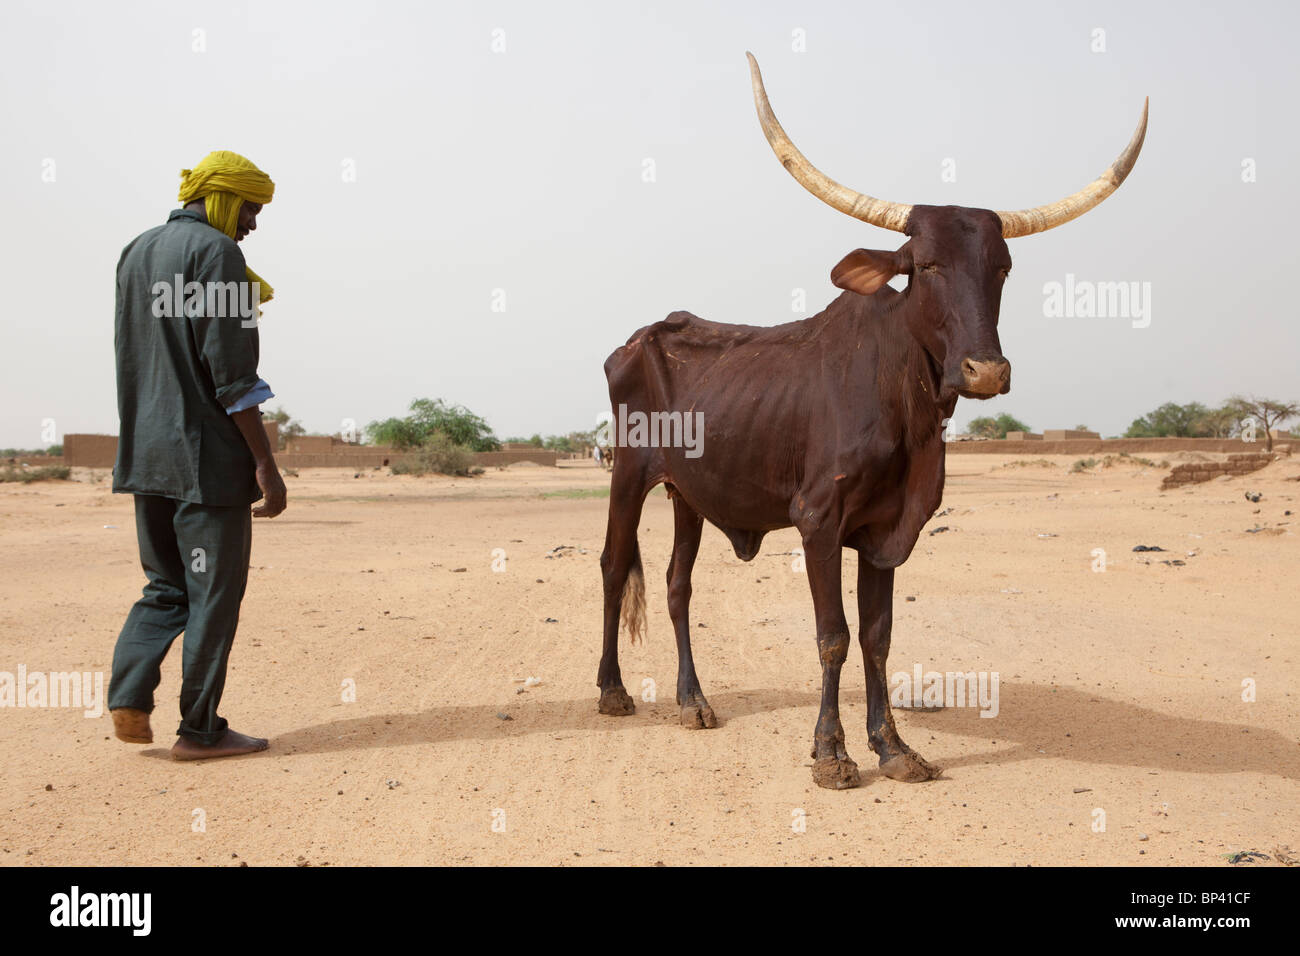 ABALA, NIGER, 30 Luglio 2010: Uomini ottenere un debole mucca che aveva collpsed torna sui suoi piedi. Foto di Mike Goldwater / Christian Aid Foto Stock